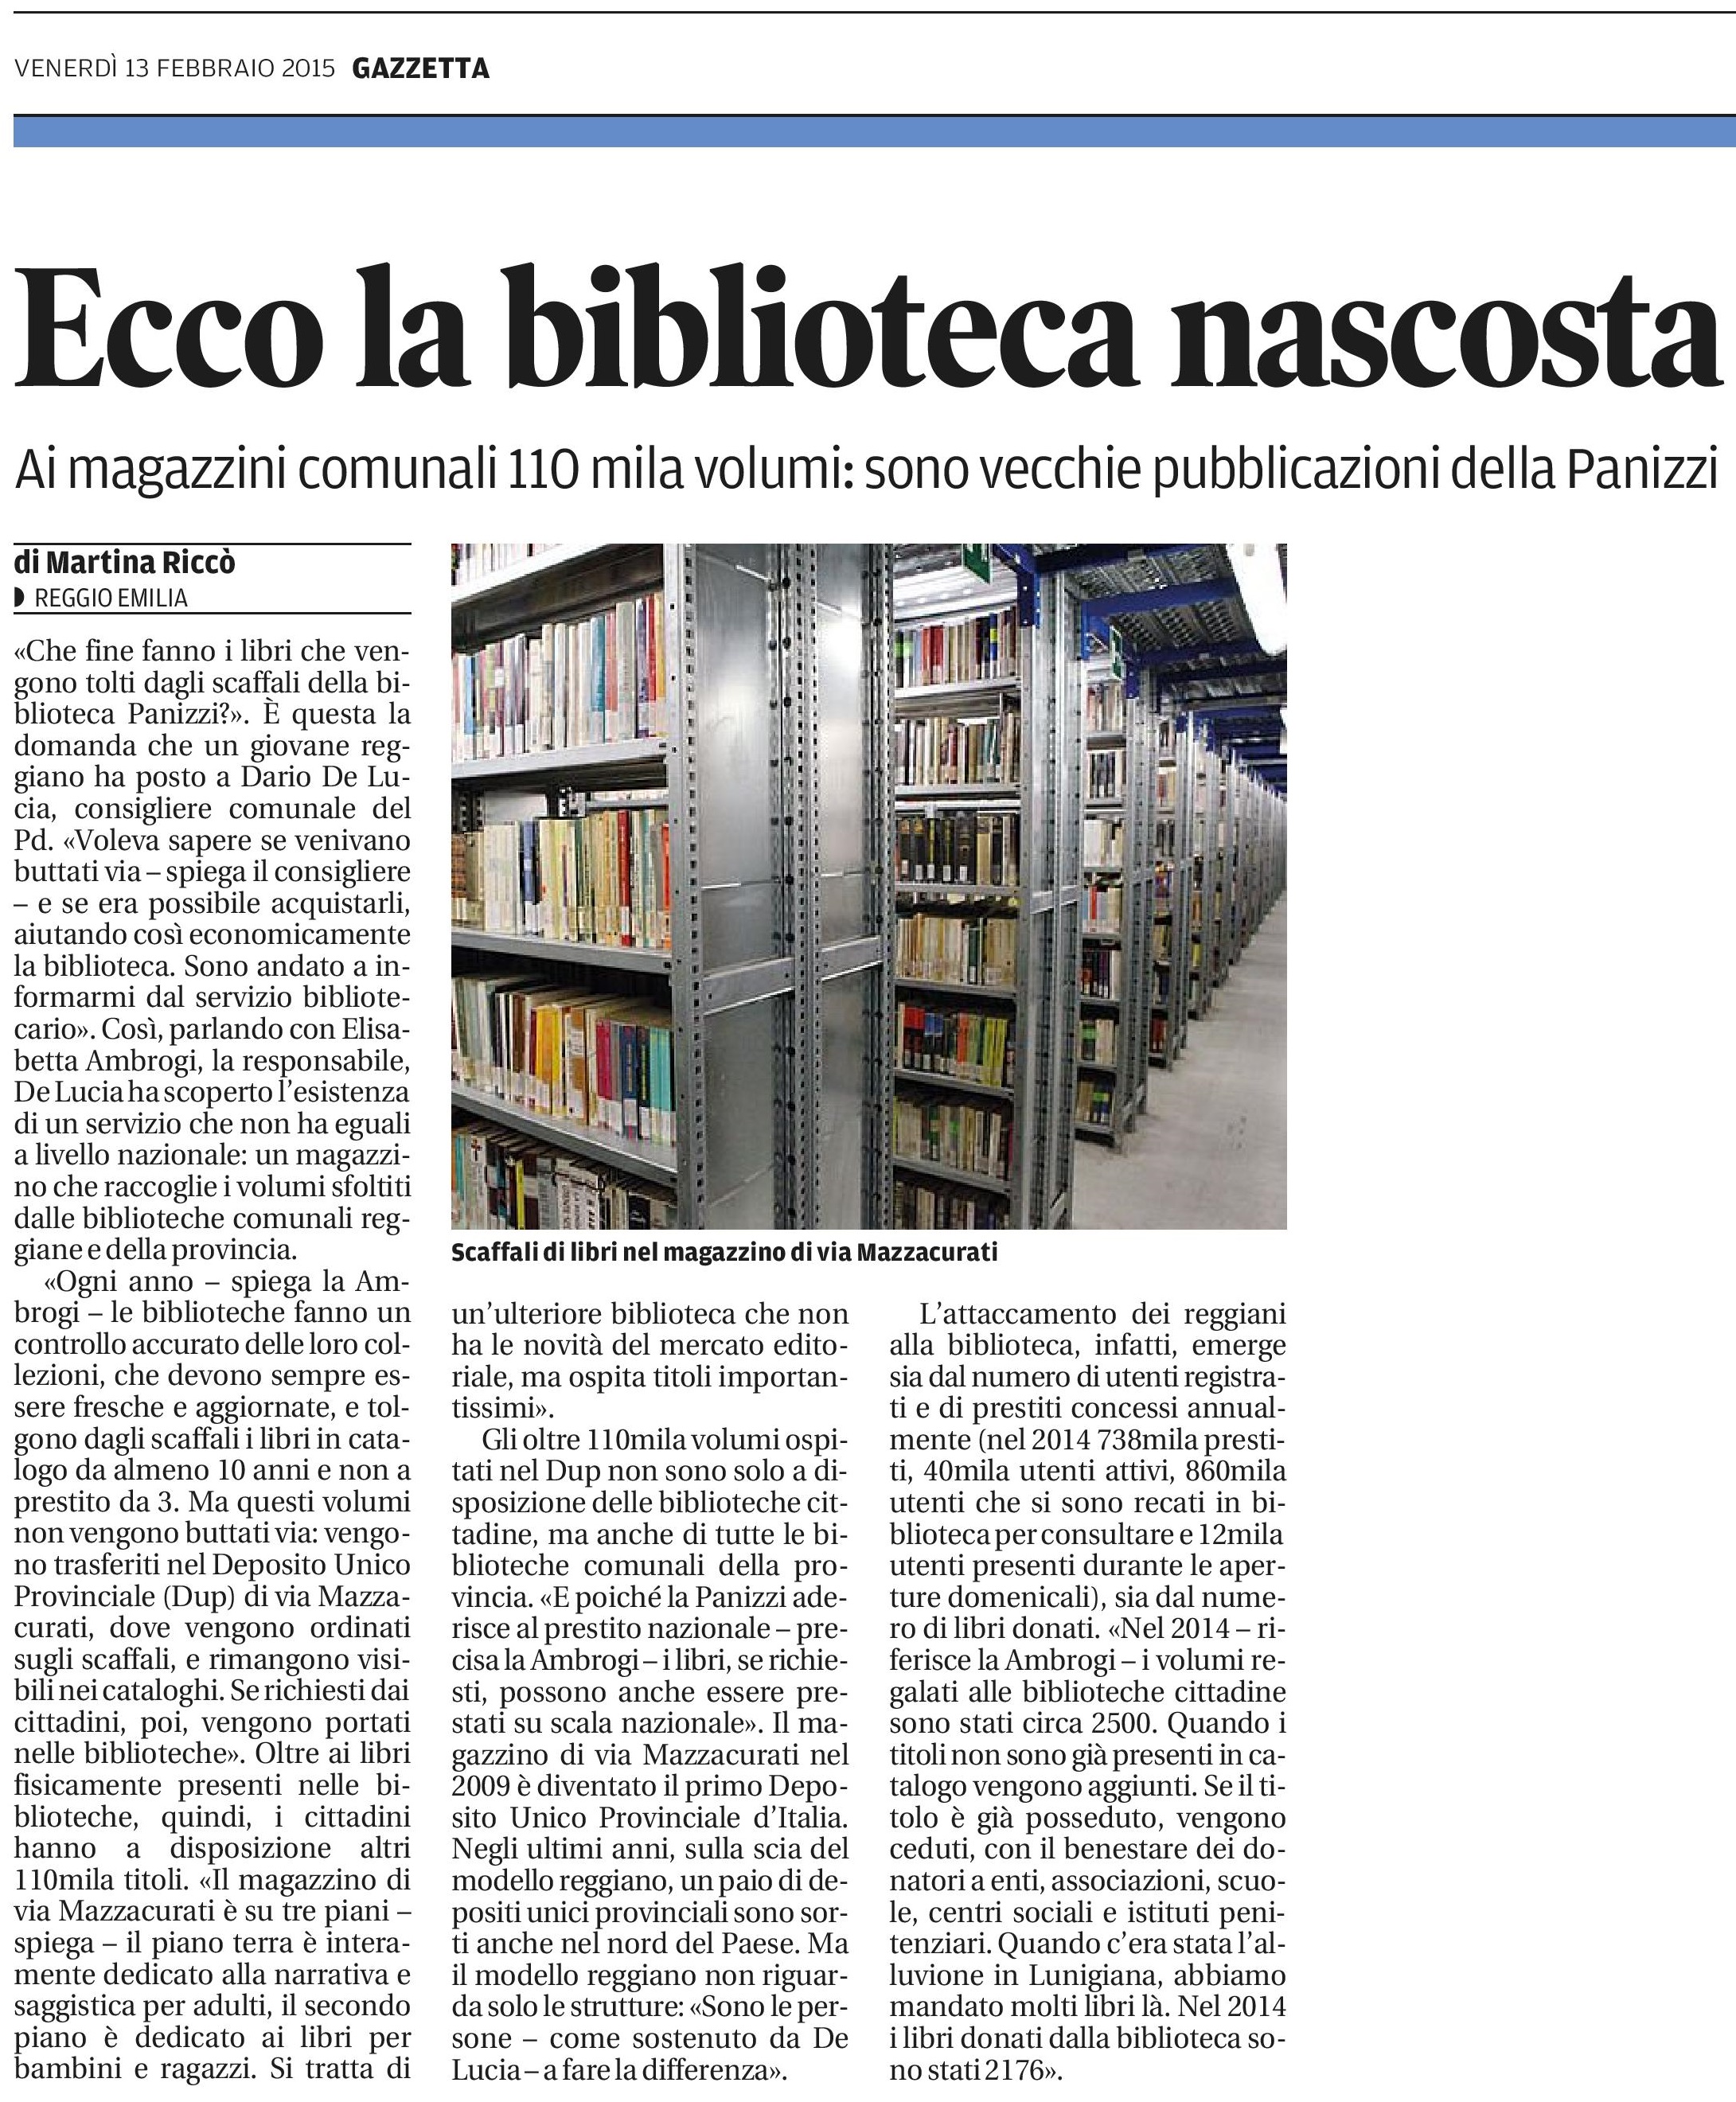 Gazzetta di Reggio 13 Febbraio 2015 - biblioteche